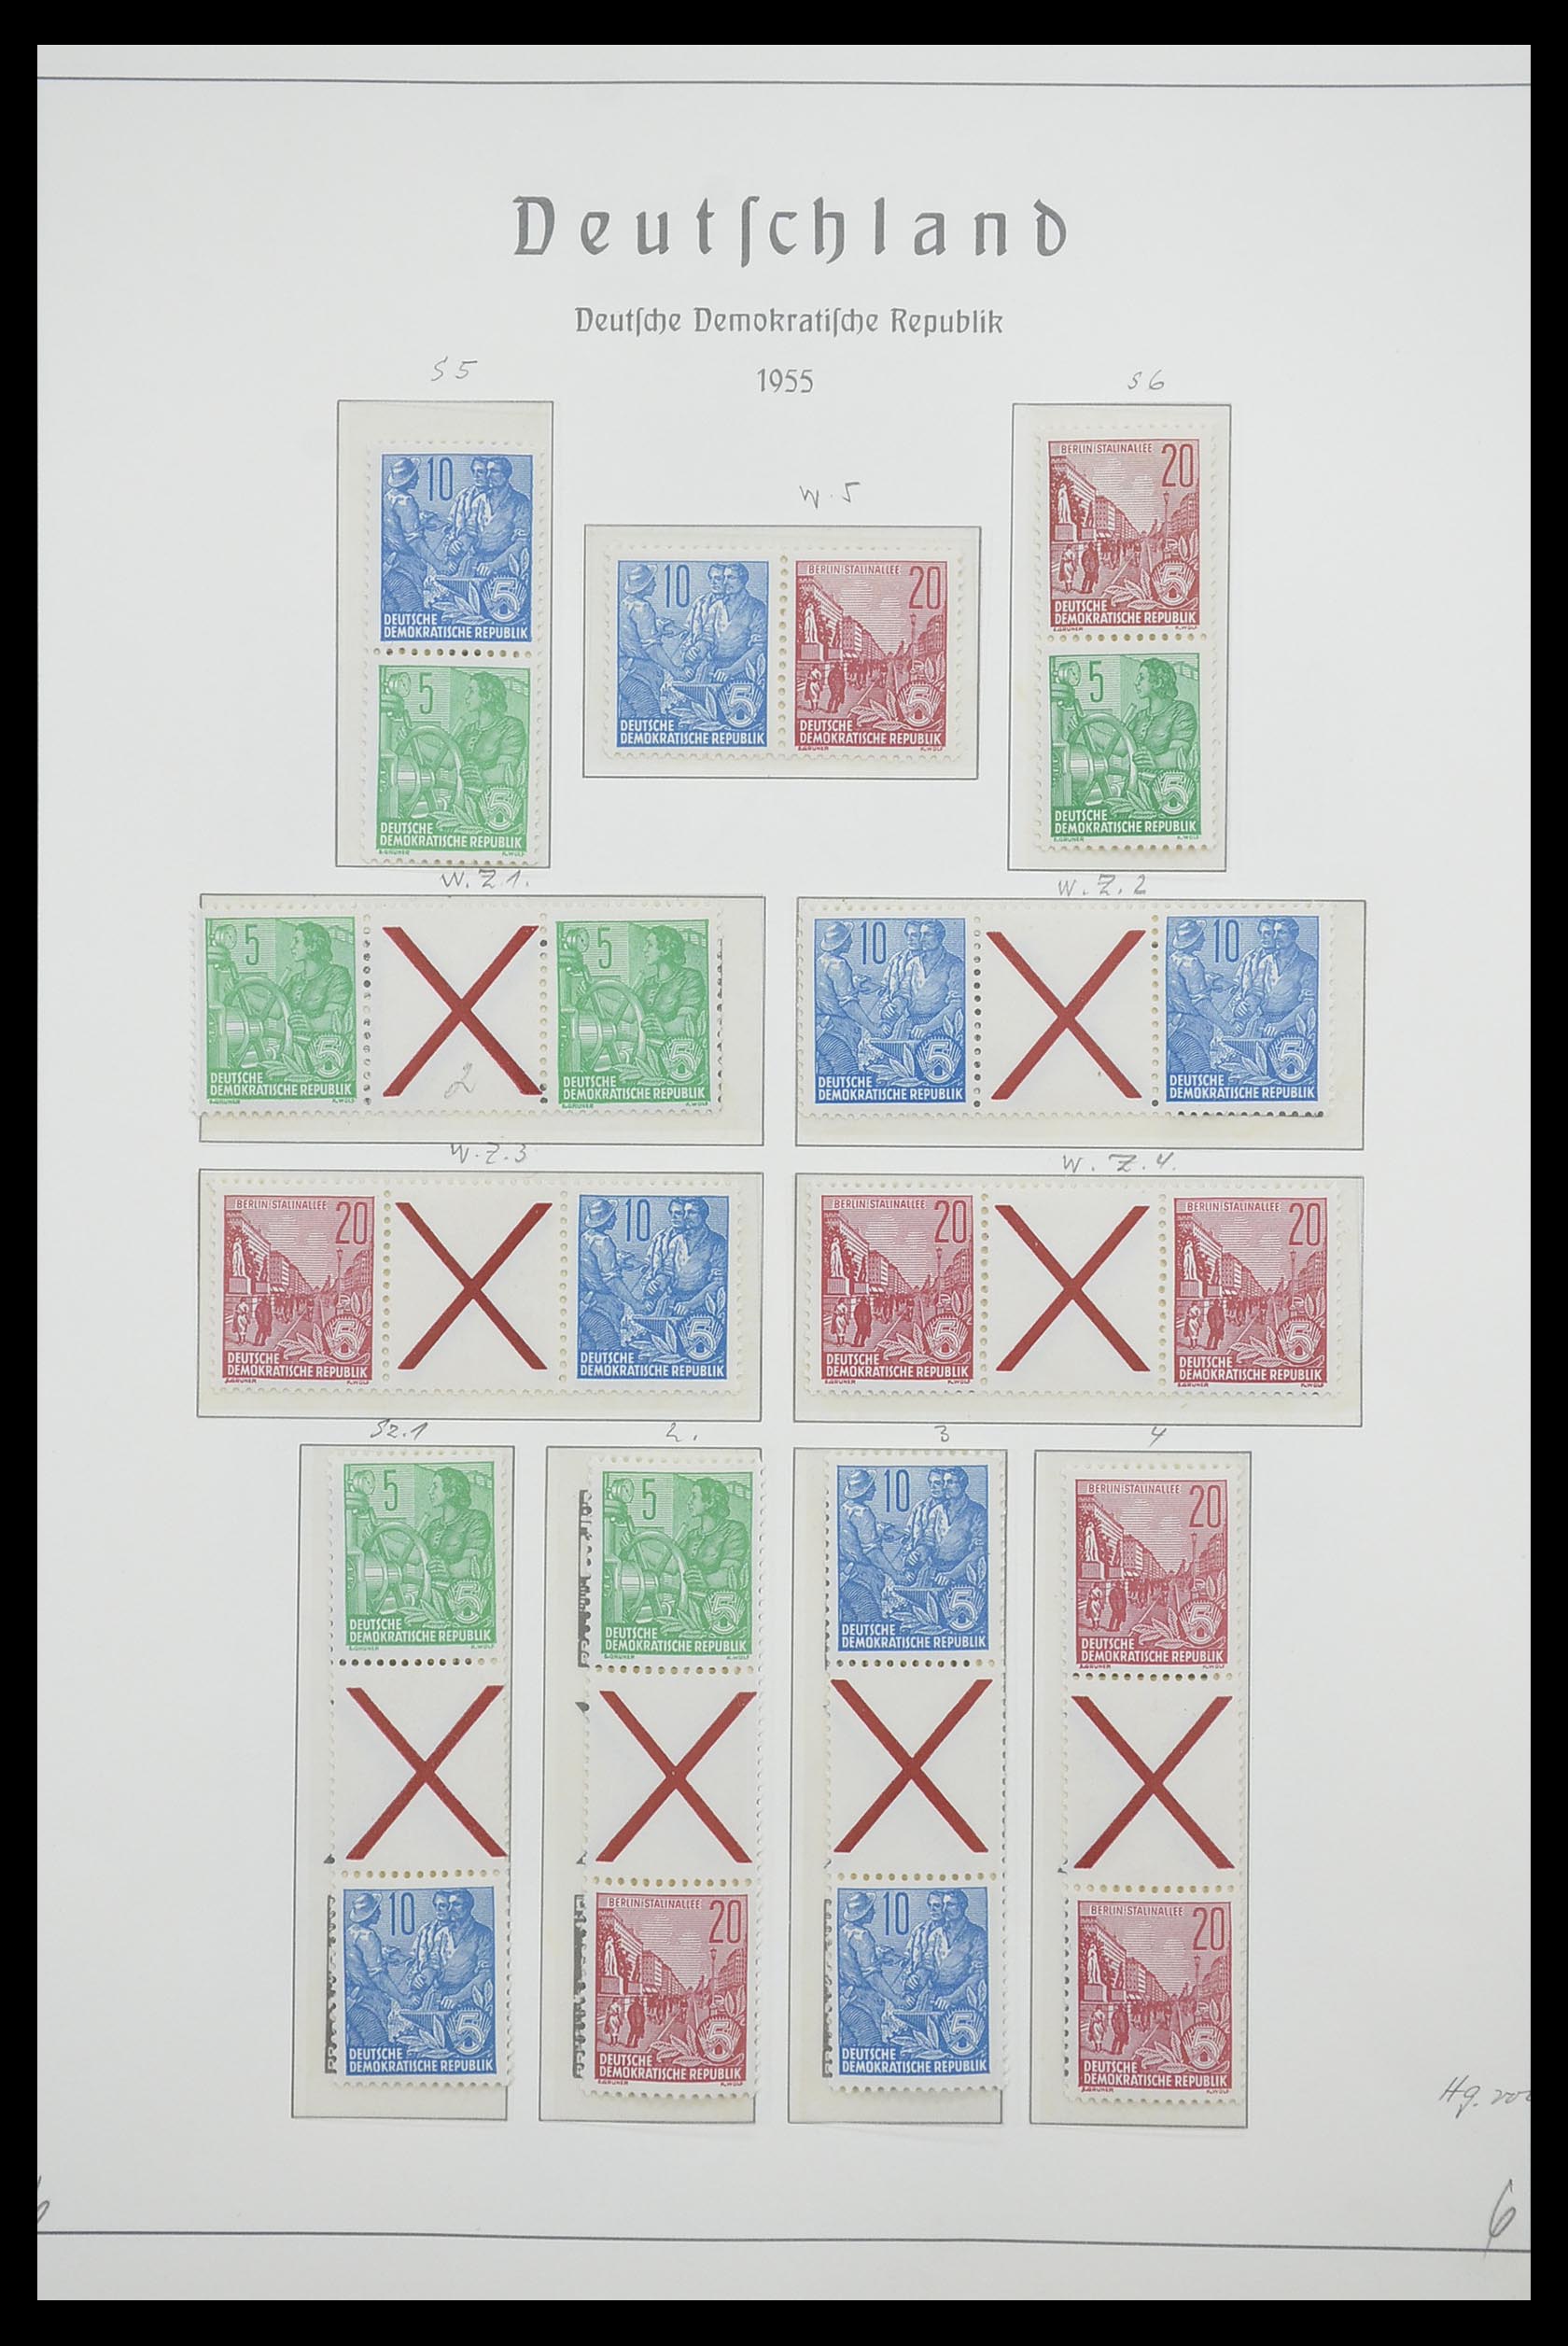 33271 001 - Postzegelverzameling 33271 DDR combinaties 1955-1990.